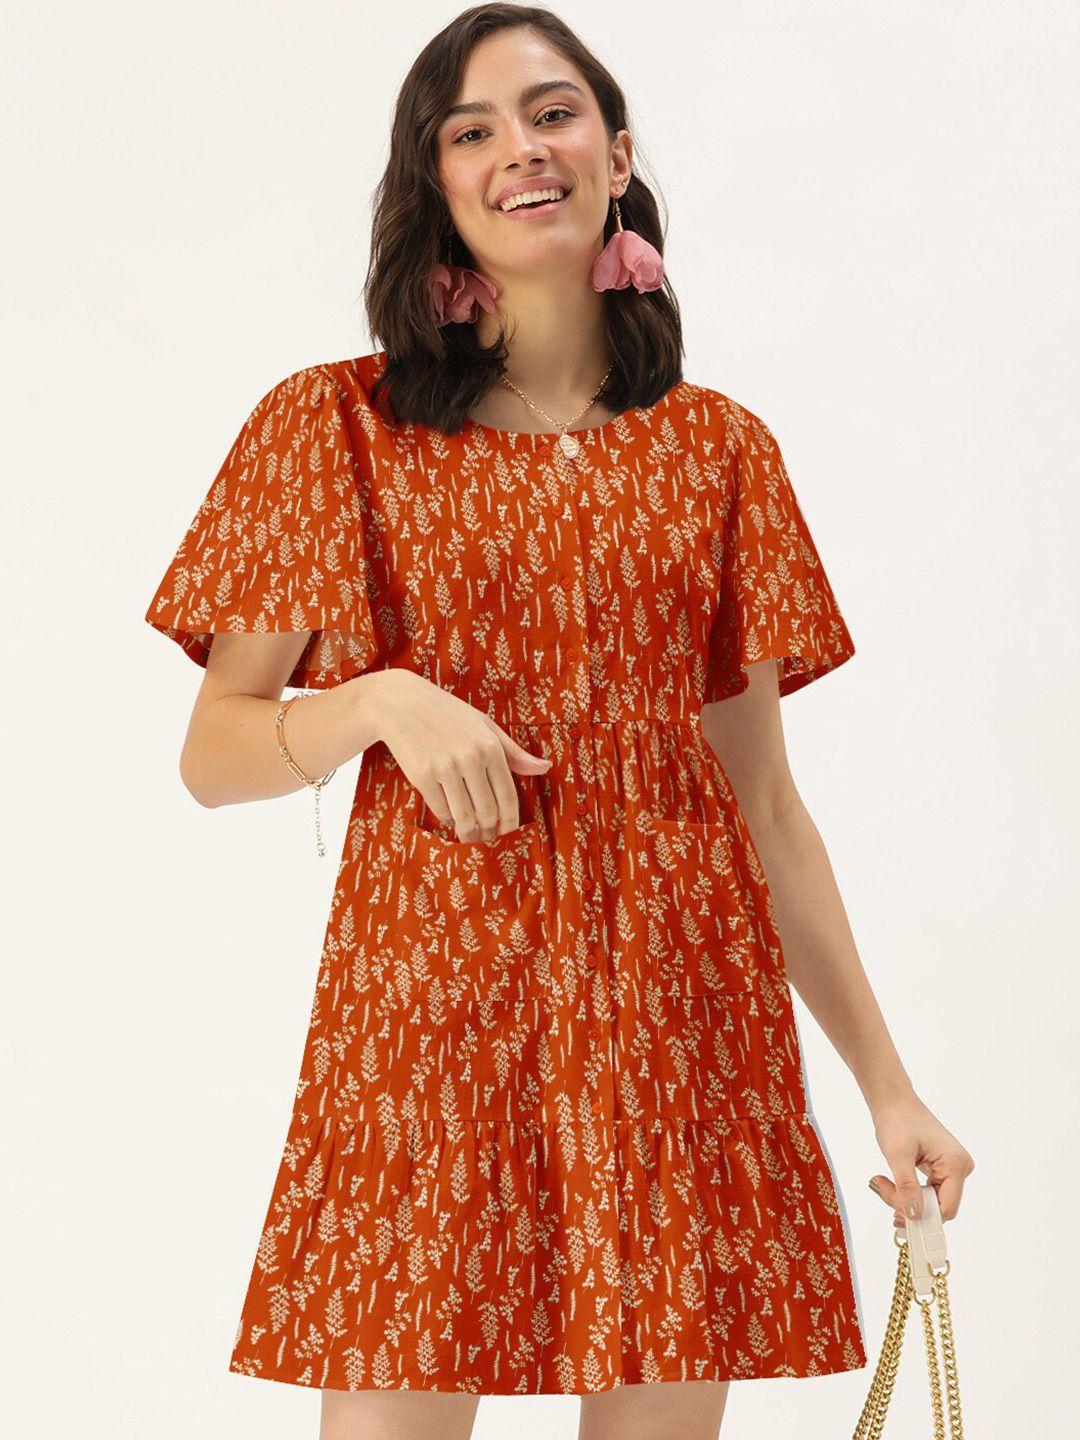 dressberry orange floral dress